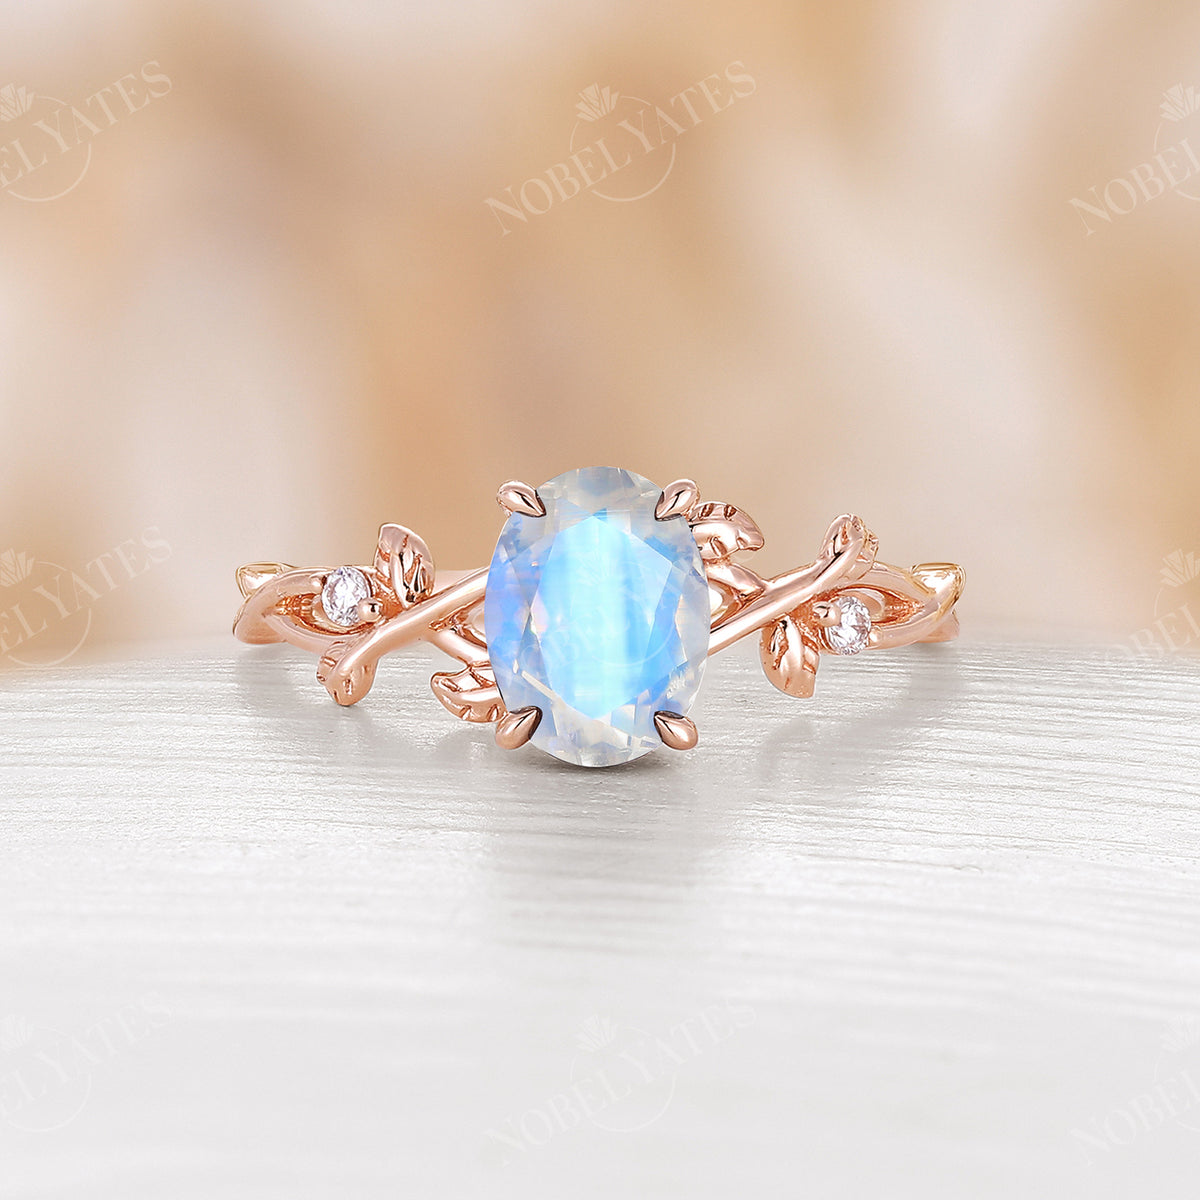 Blue Moonstone Oval Shape Engagement Ring Leaf Design Band